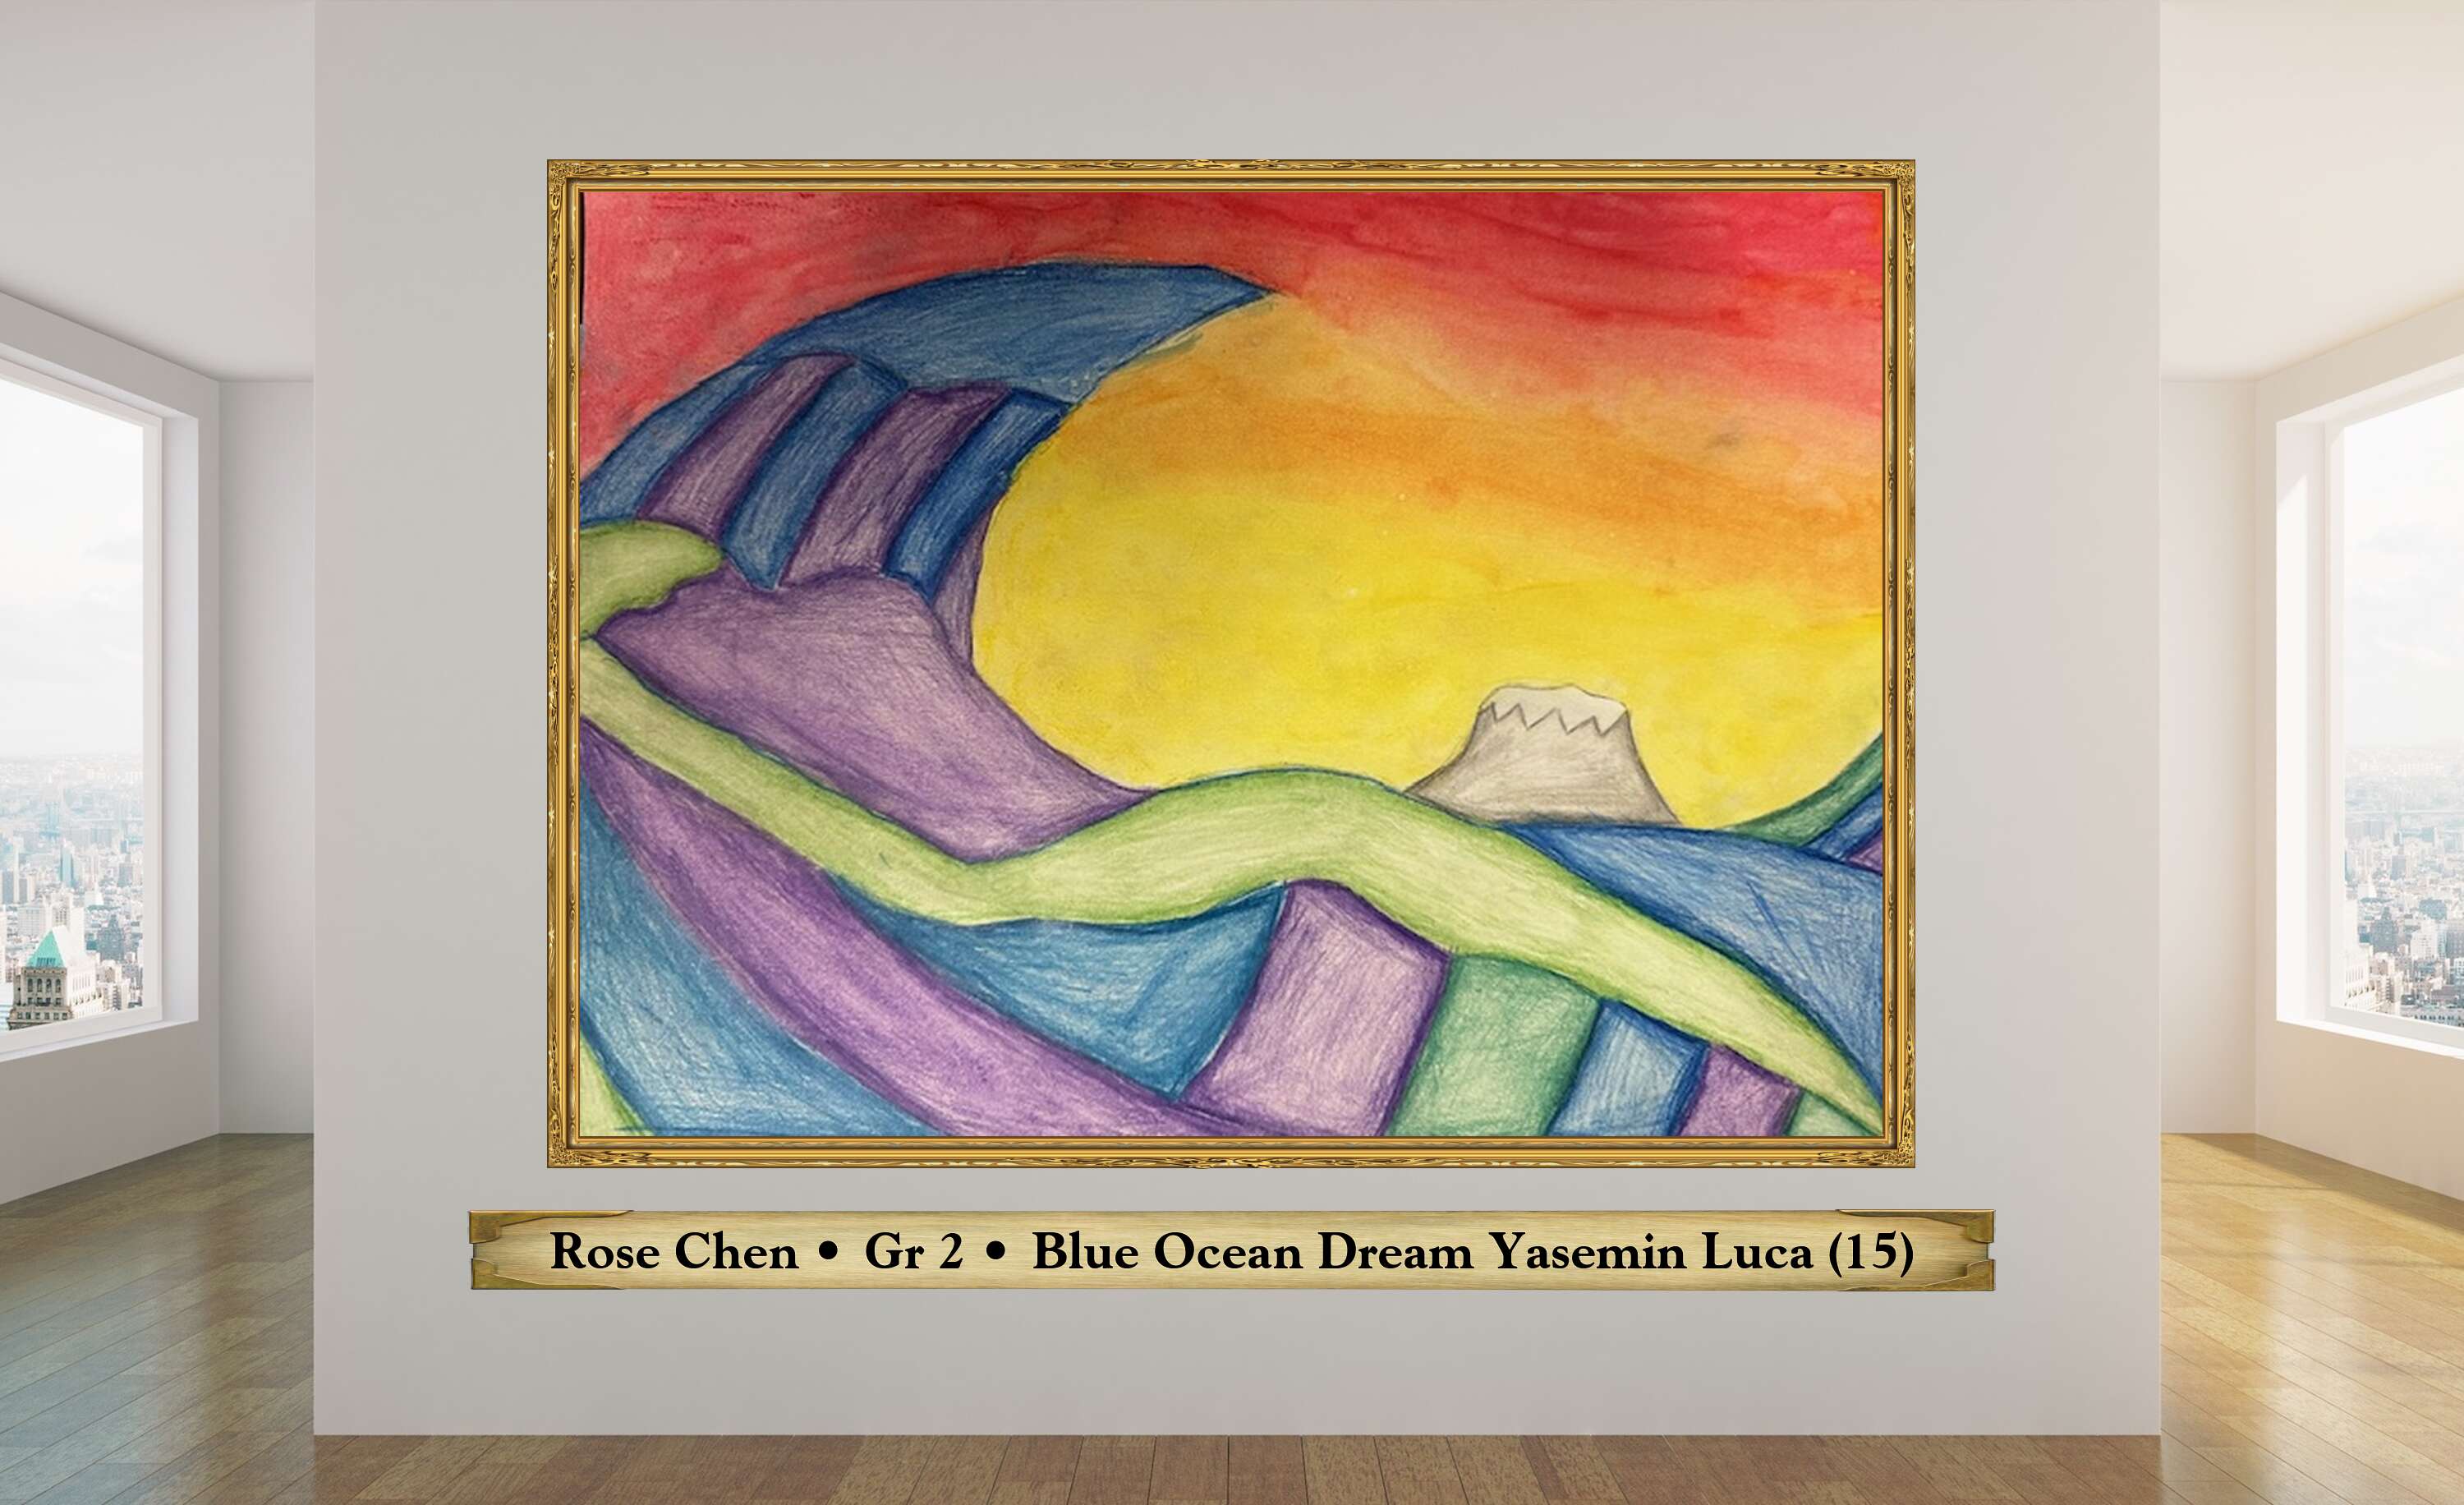 Rose Chen • Gr 2 • Blue Ocean Dream Yasemin Luca (15)